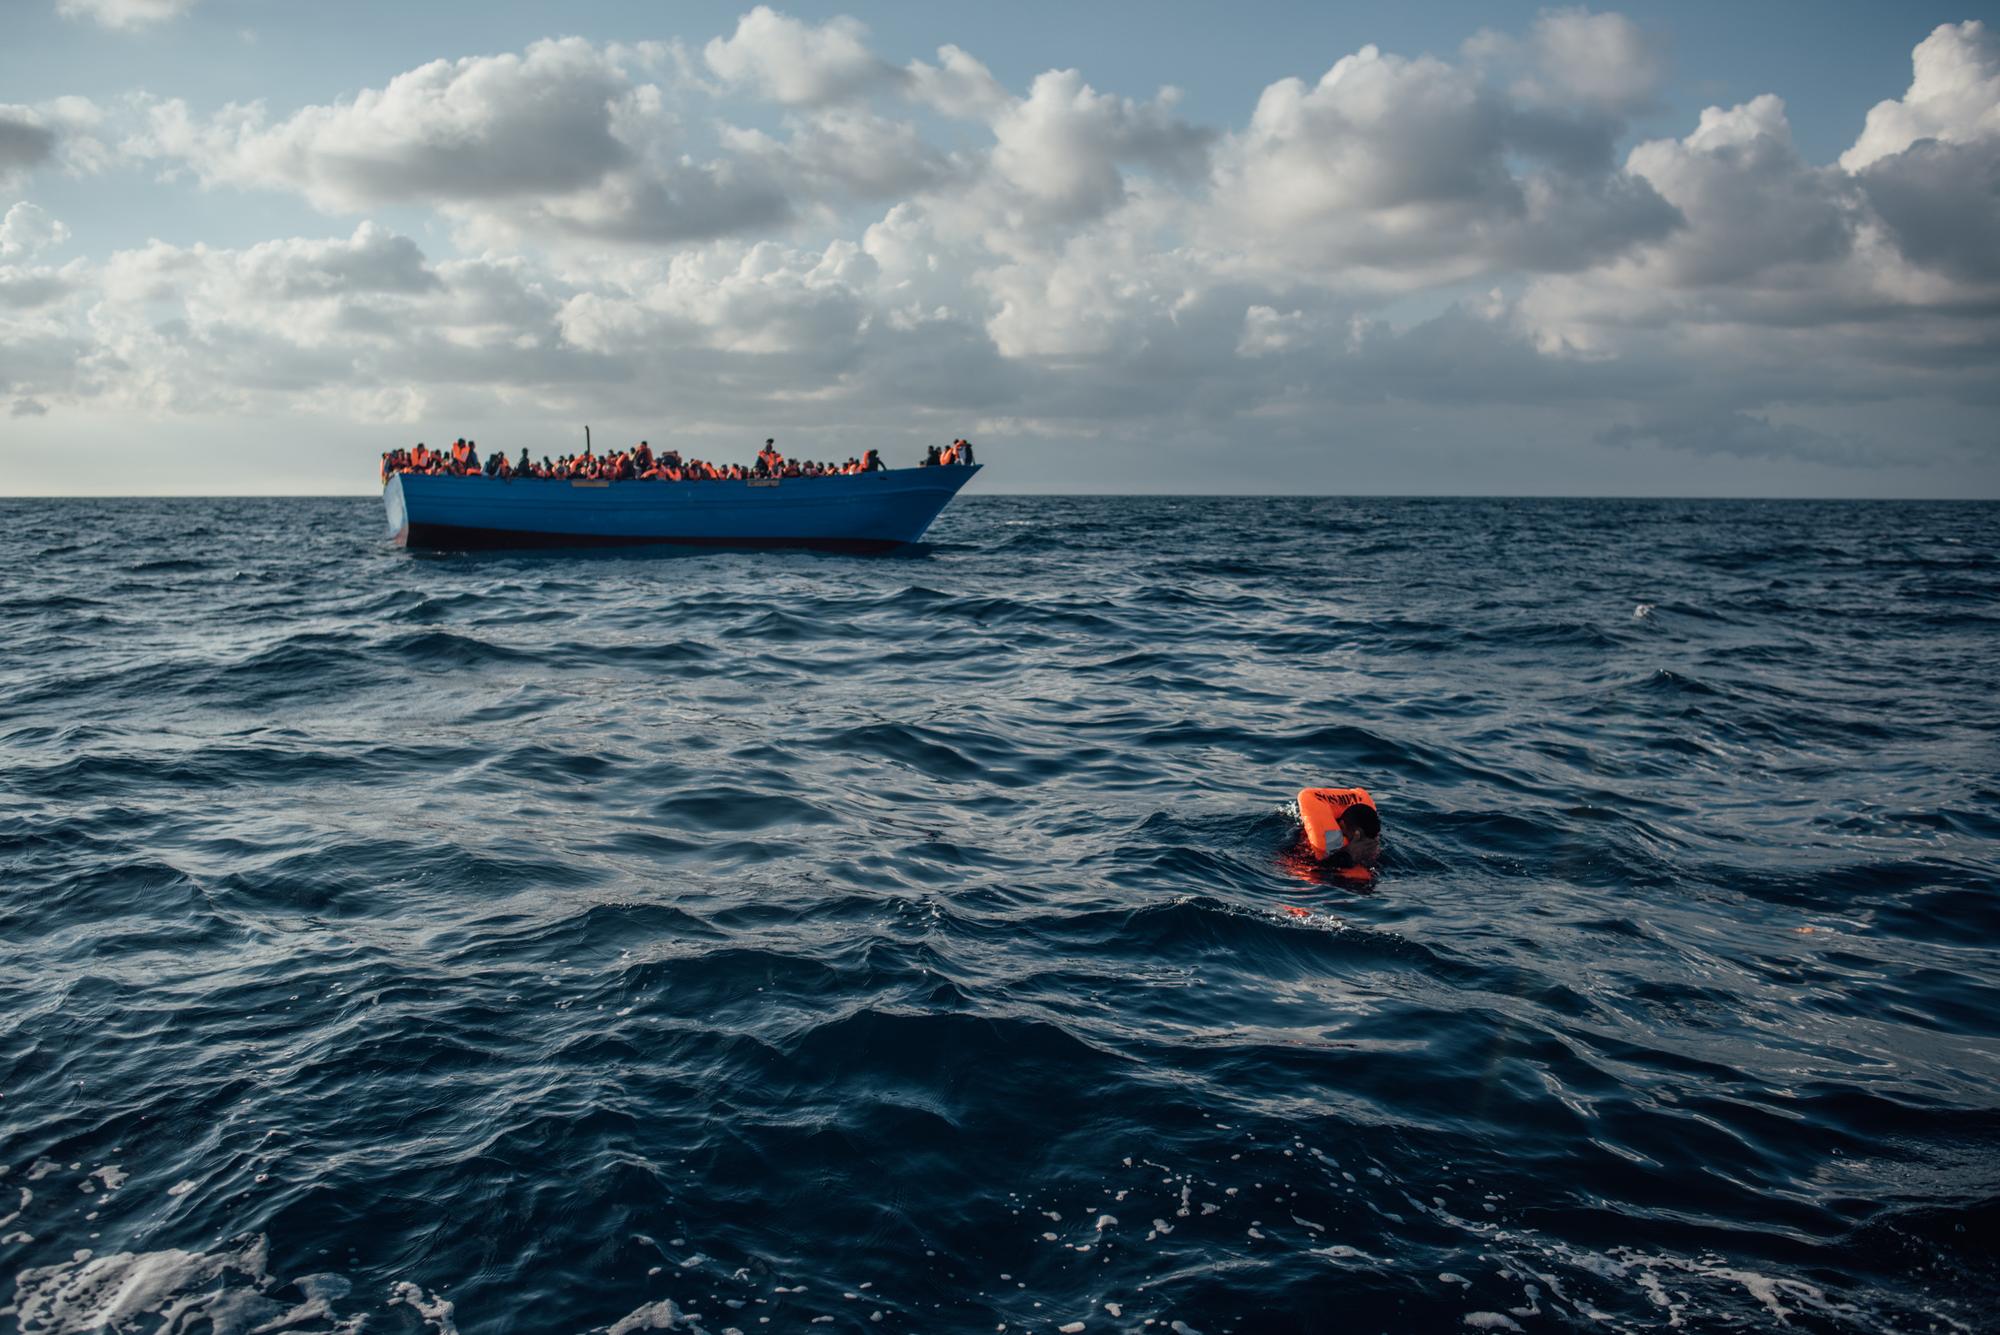 وفاة 289 طفلاً مهاجراً خلال عبورهم البحر المتوسط هذا العام